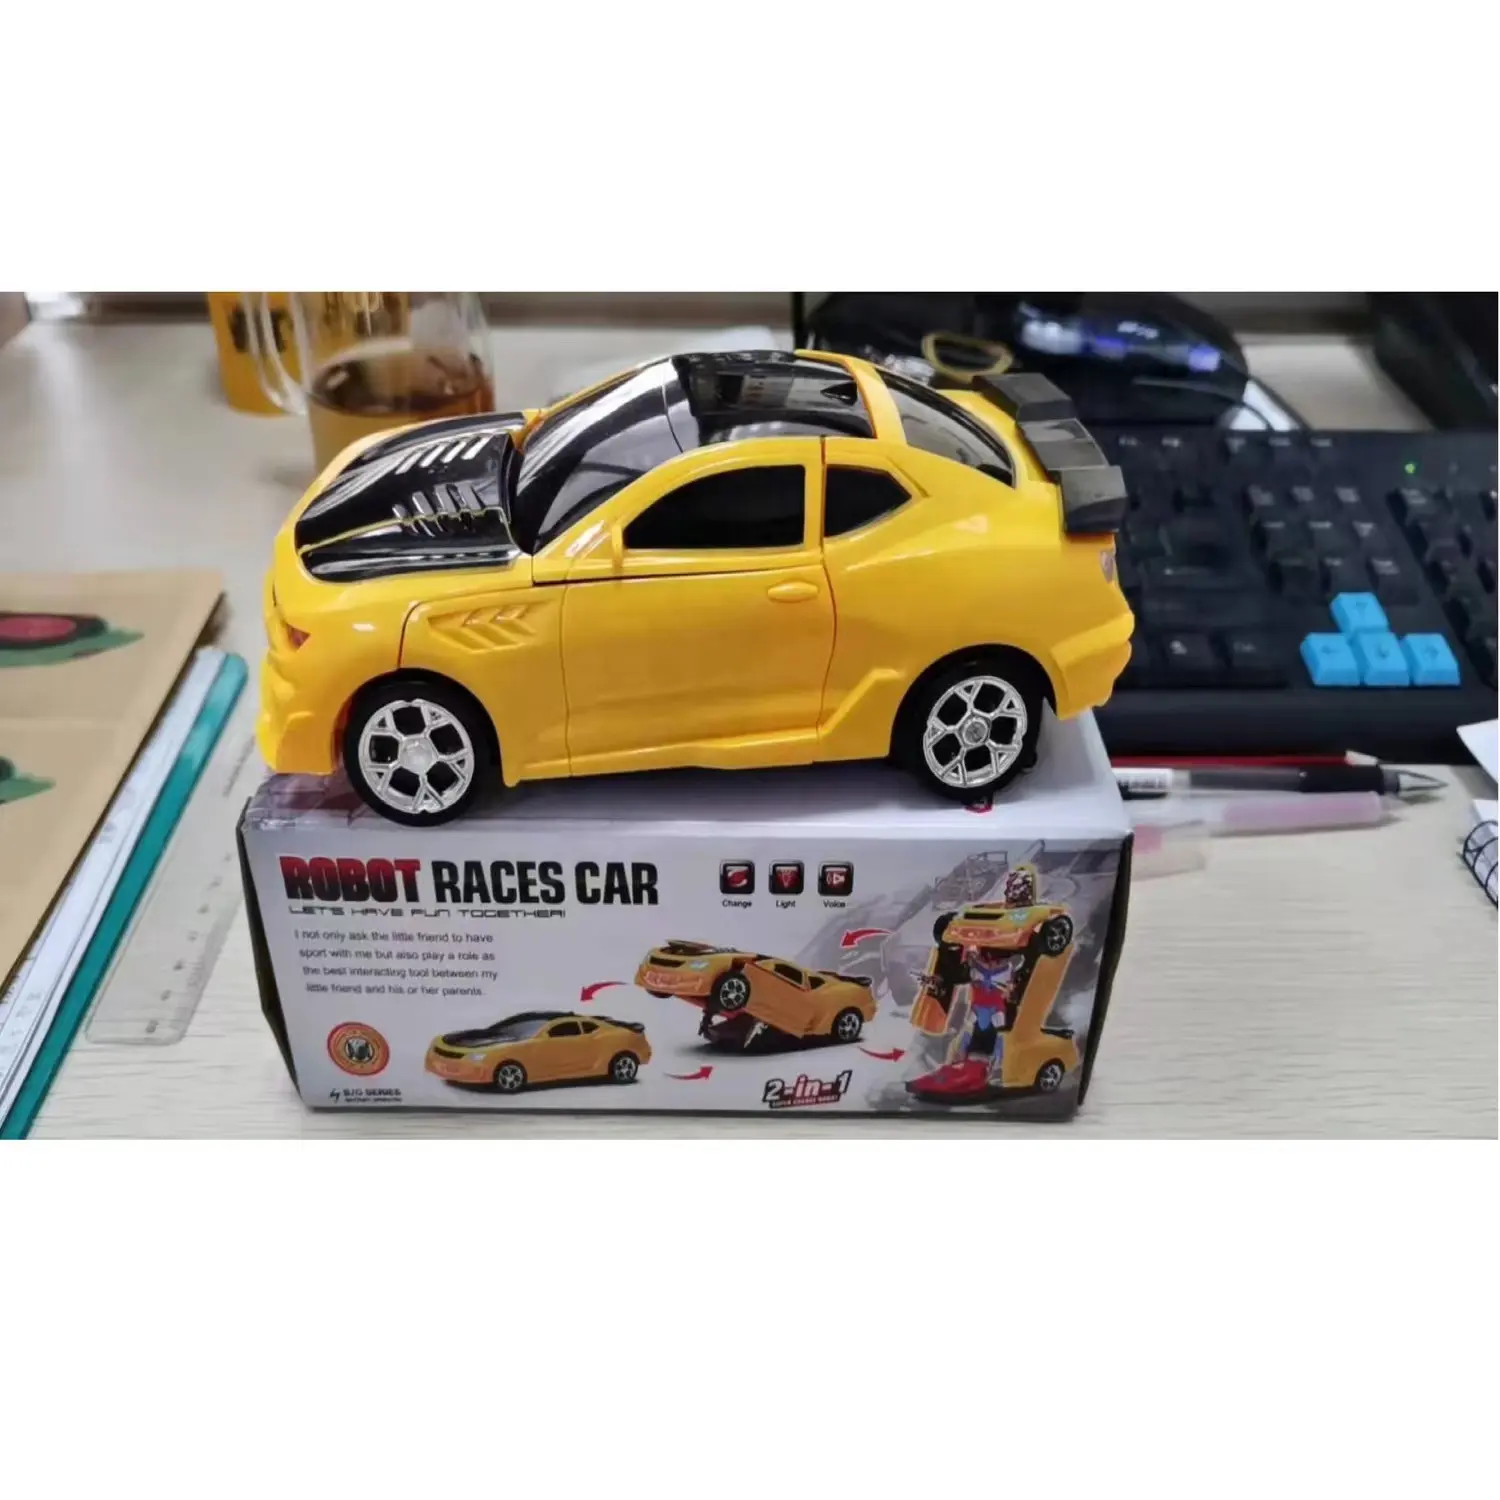 Diecast oyuncak araçlar die cast oyuncak minyatür araba modelleri